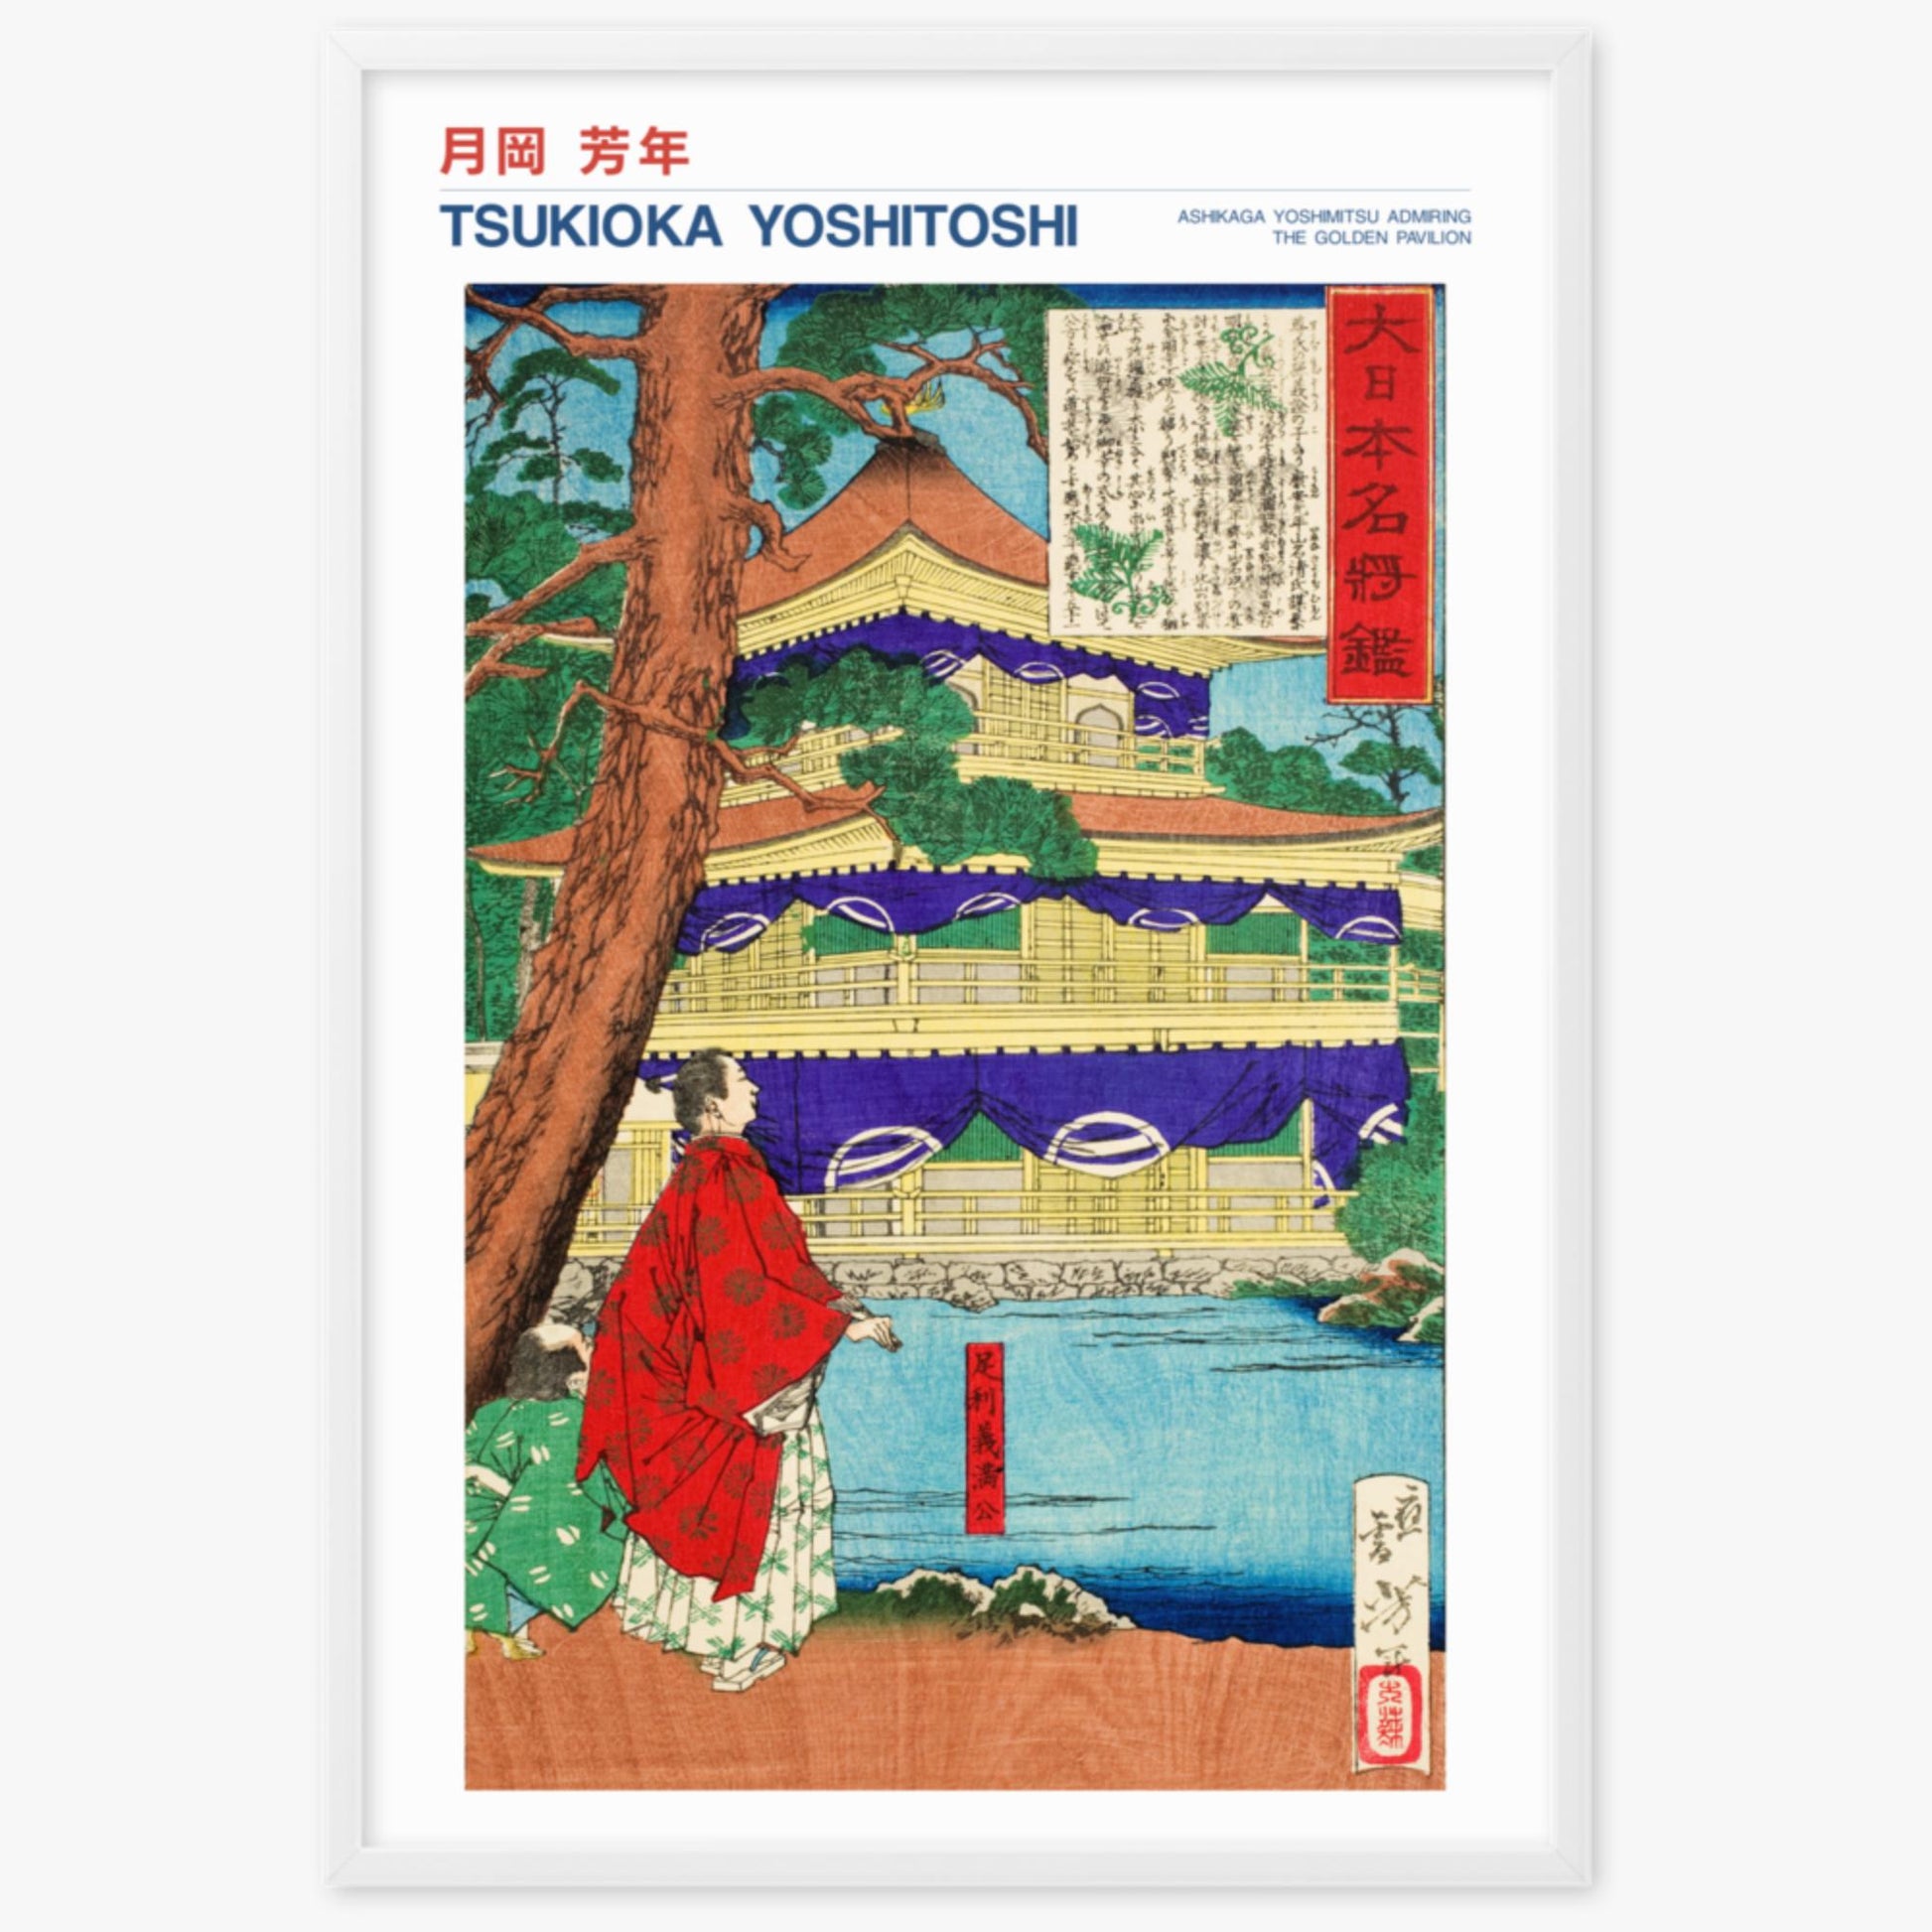 Tsukioka Yoshitoshi - Ashikaga Yoshimitsu admiring the Golden Pavilion - Decoration 61x91 cm Poster With White Frame